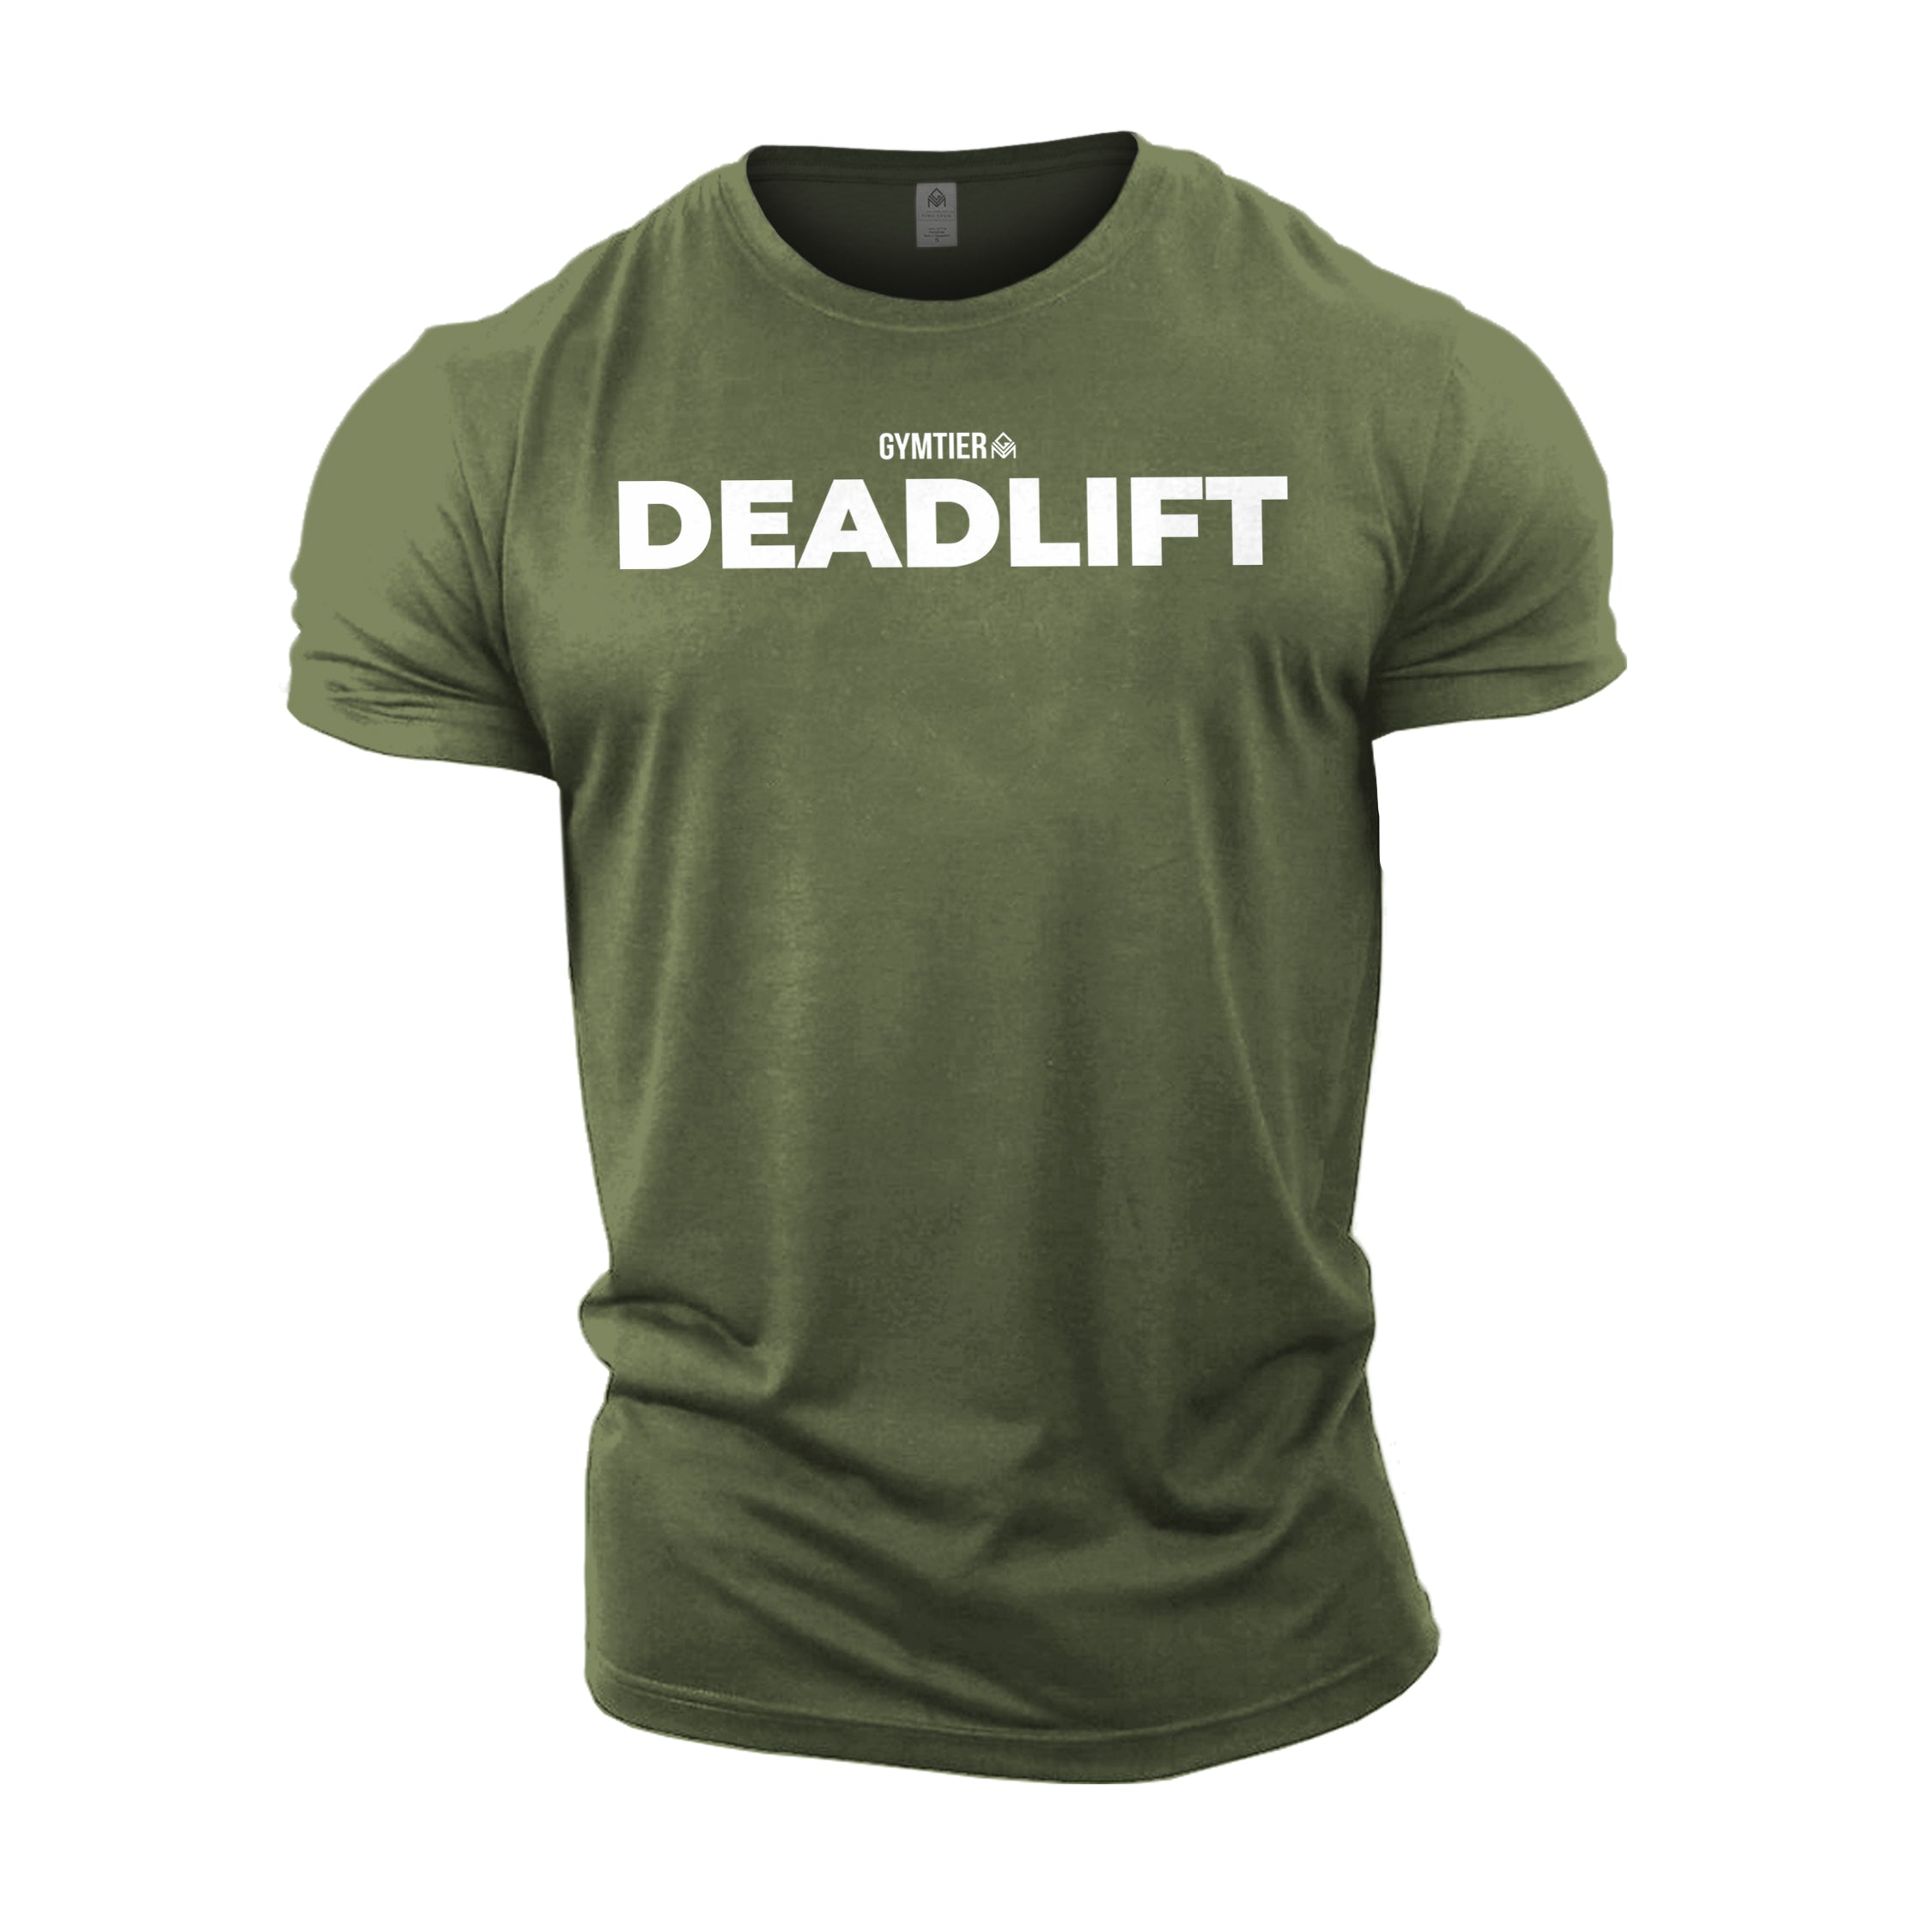 GYMTIER Deadlift T-Shirt